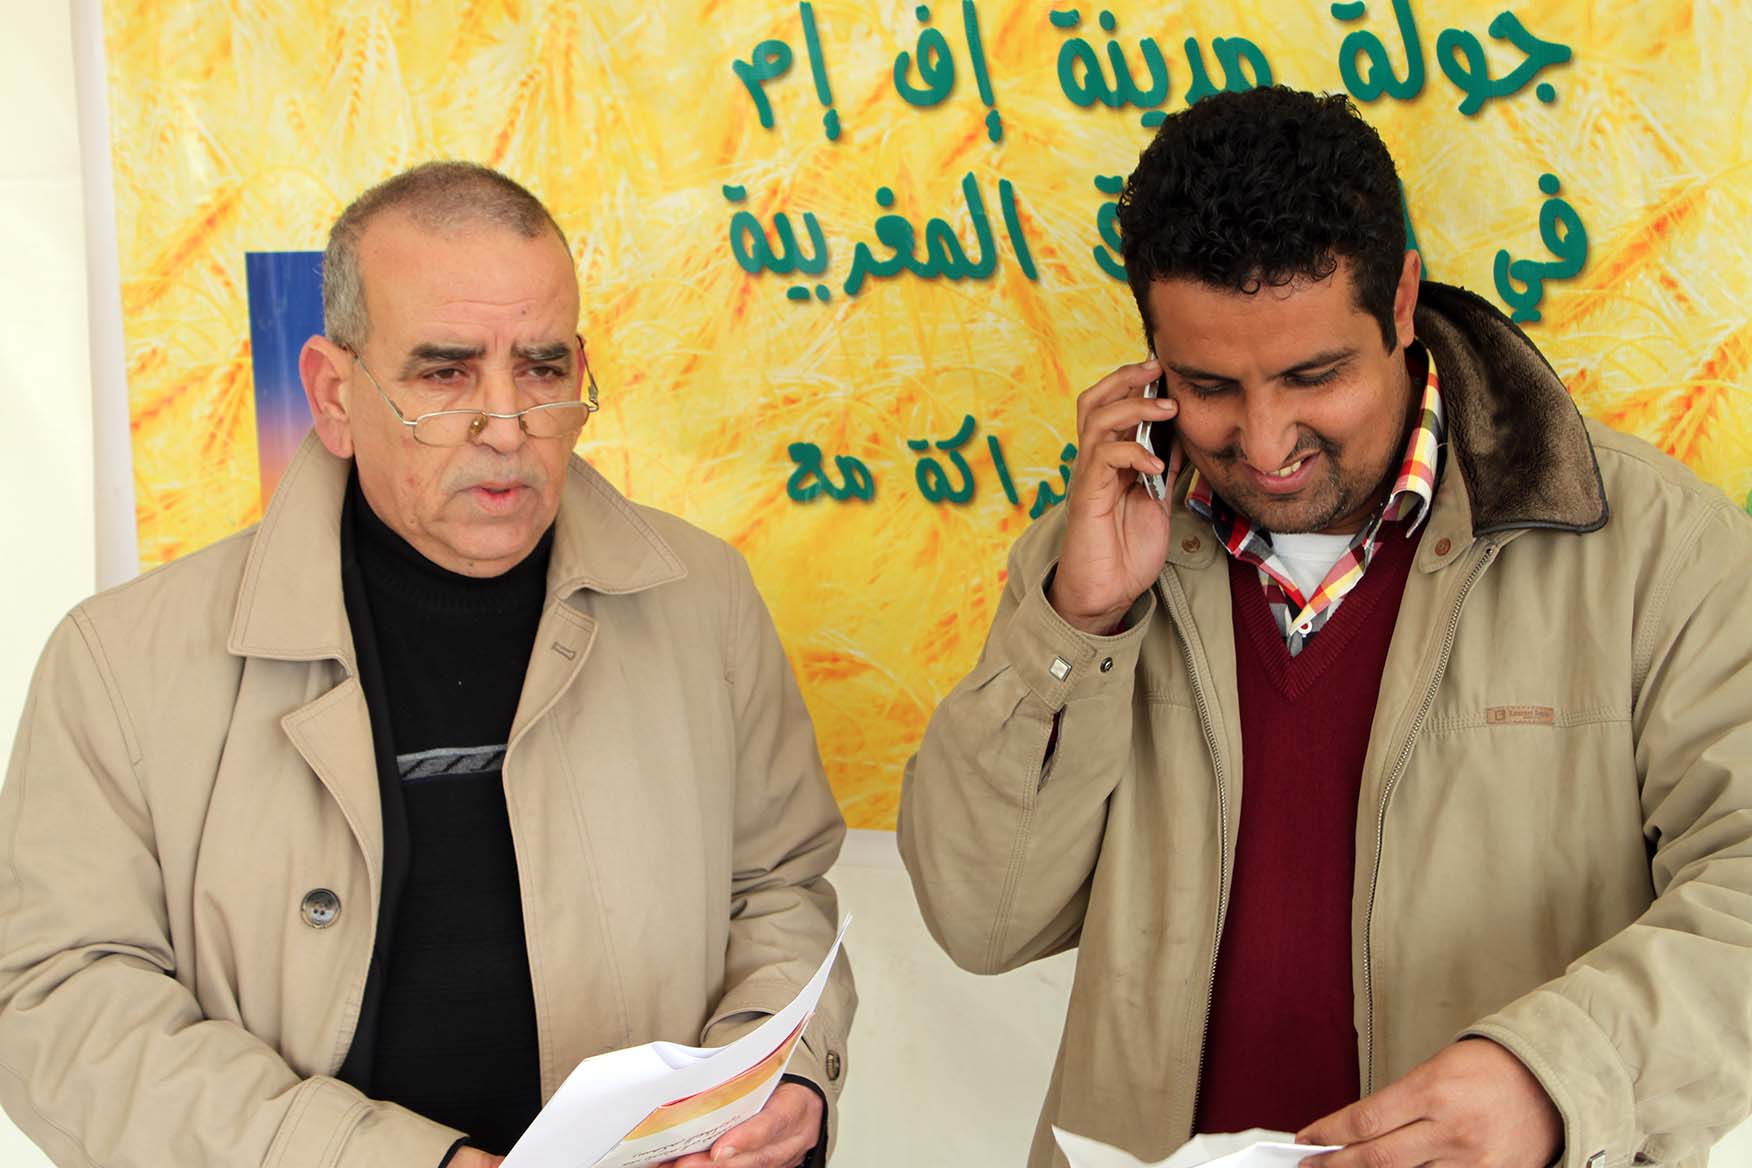 جولة إذاعة مدينة إف إم بالأسواق المغربية :سوق حد كرت ” المحافظة العقارية “